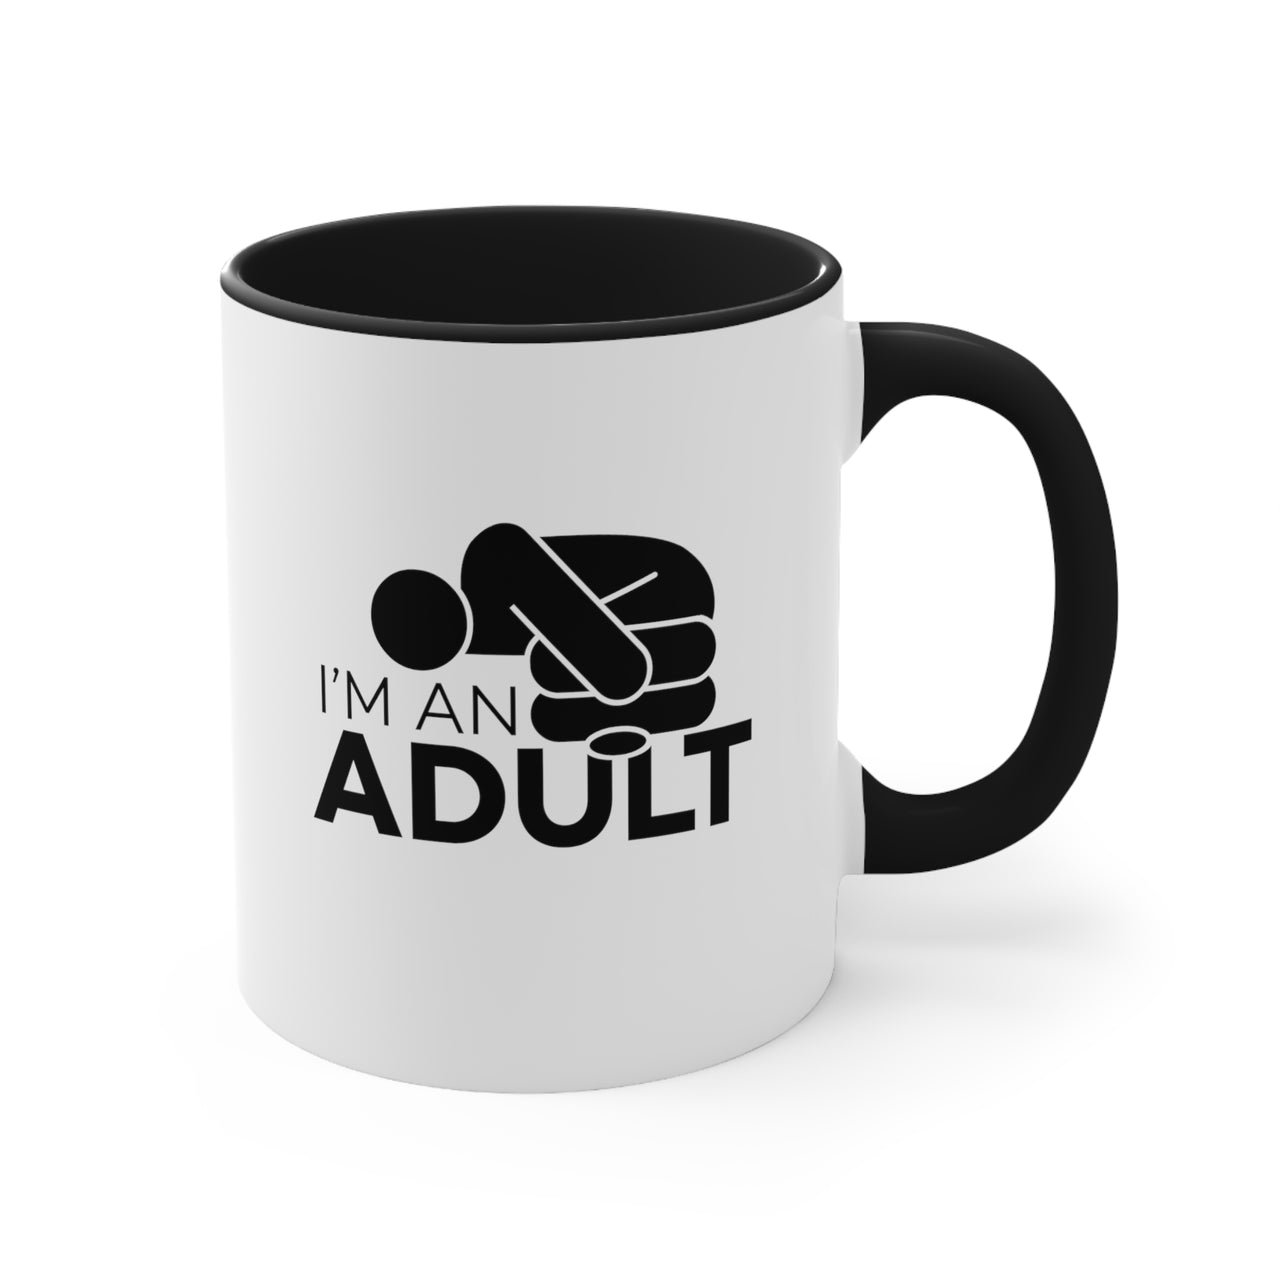 Mug for Adults